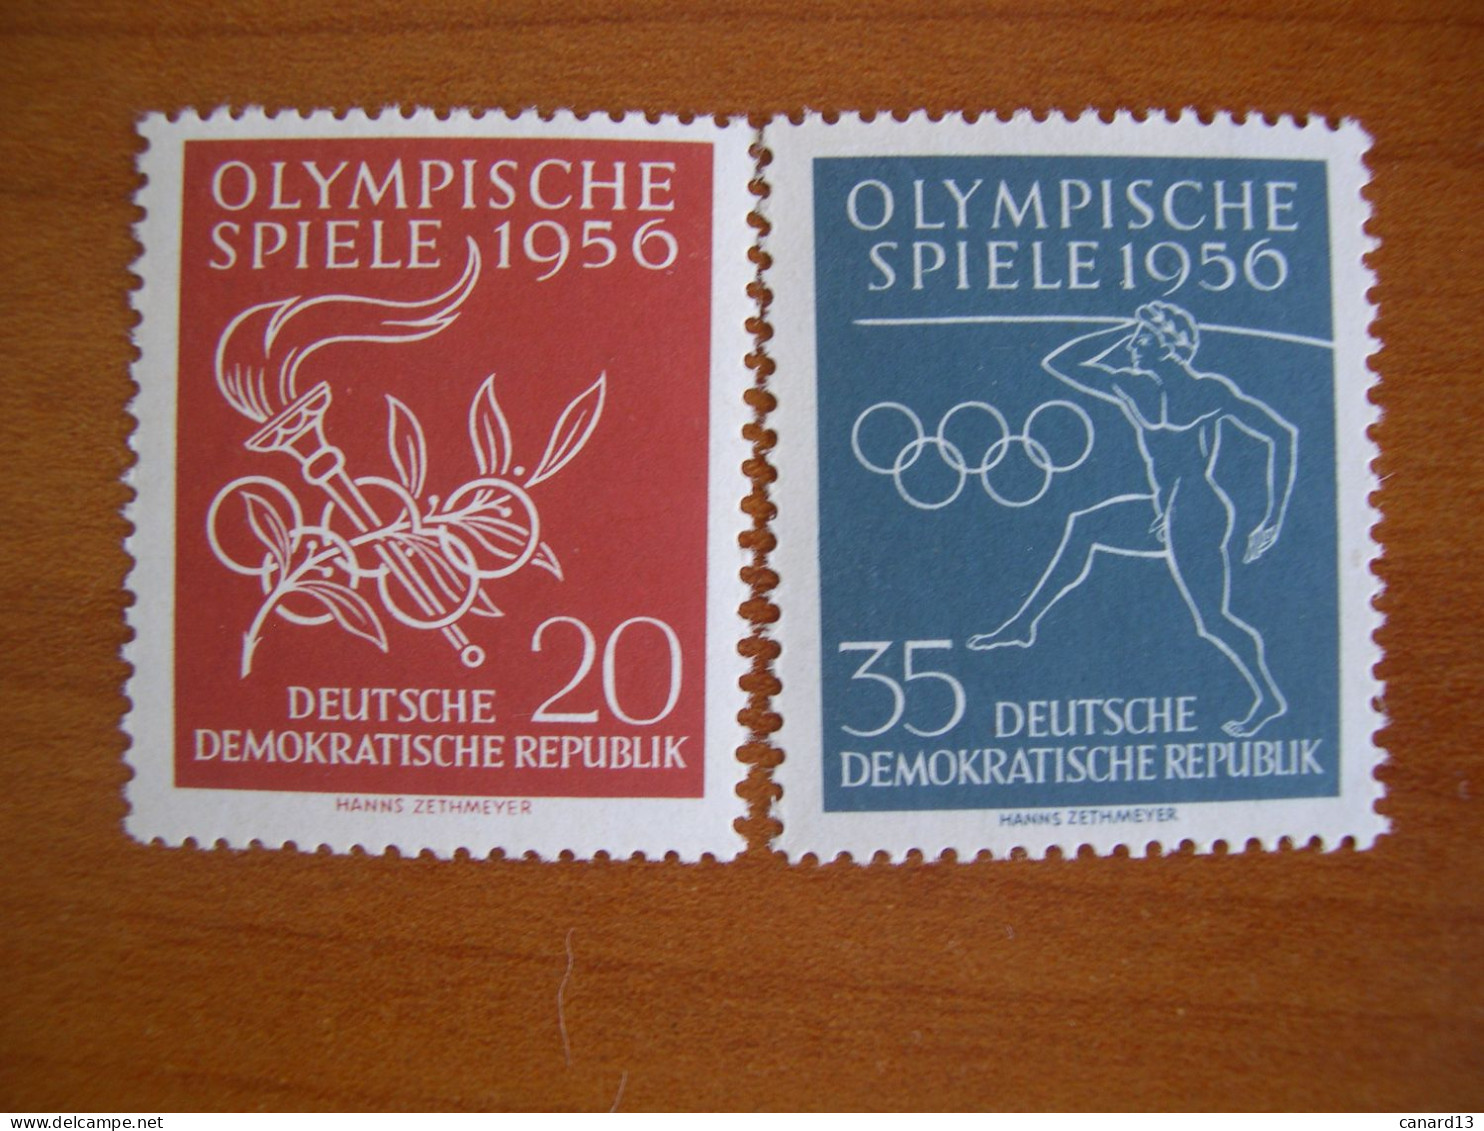 RDA   N° 267/68 Neuf** - Unused Stamps